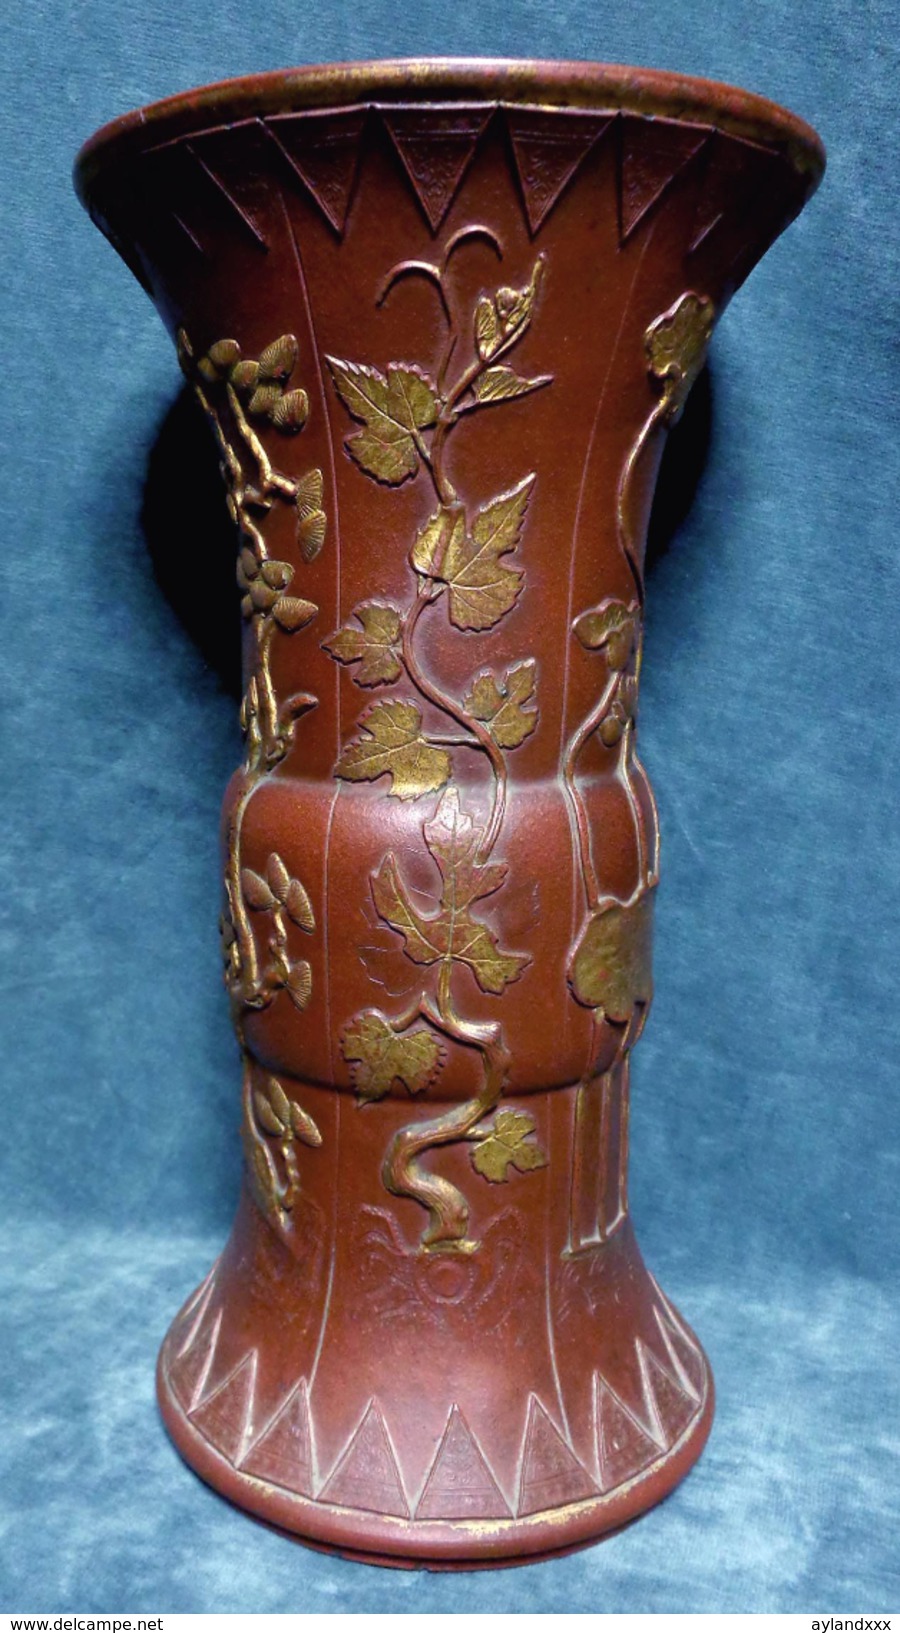 CINA (China): Rare Chinese Yixing vase, Kangxi period